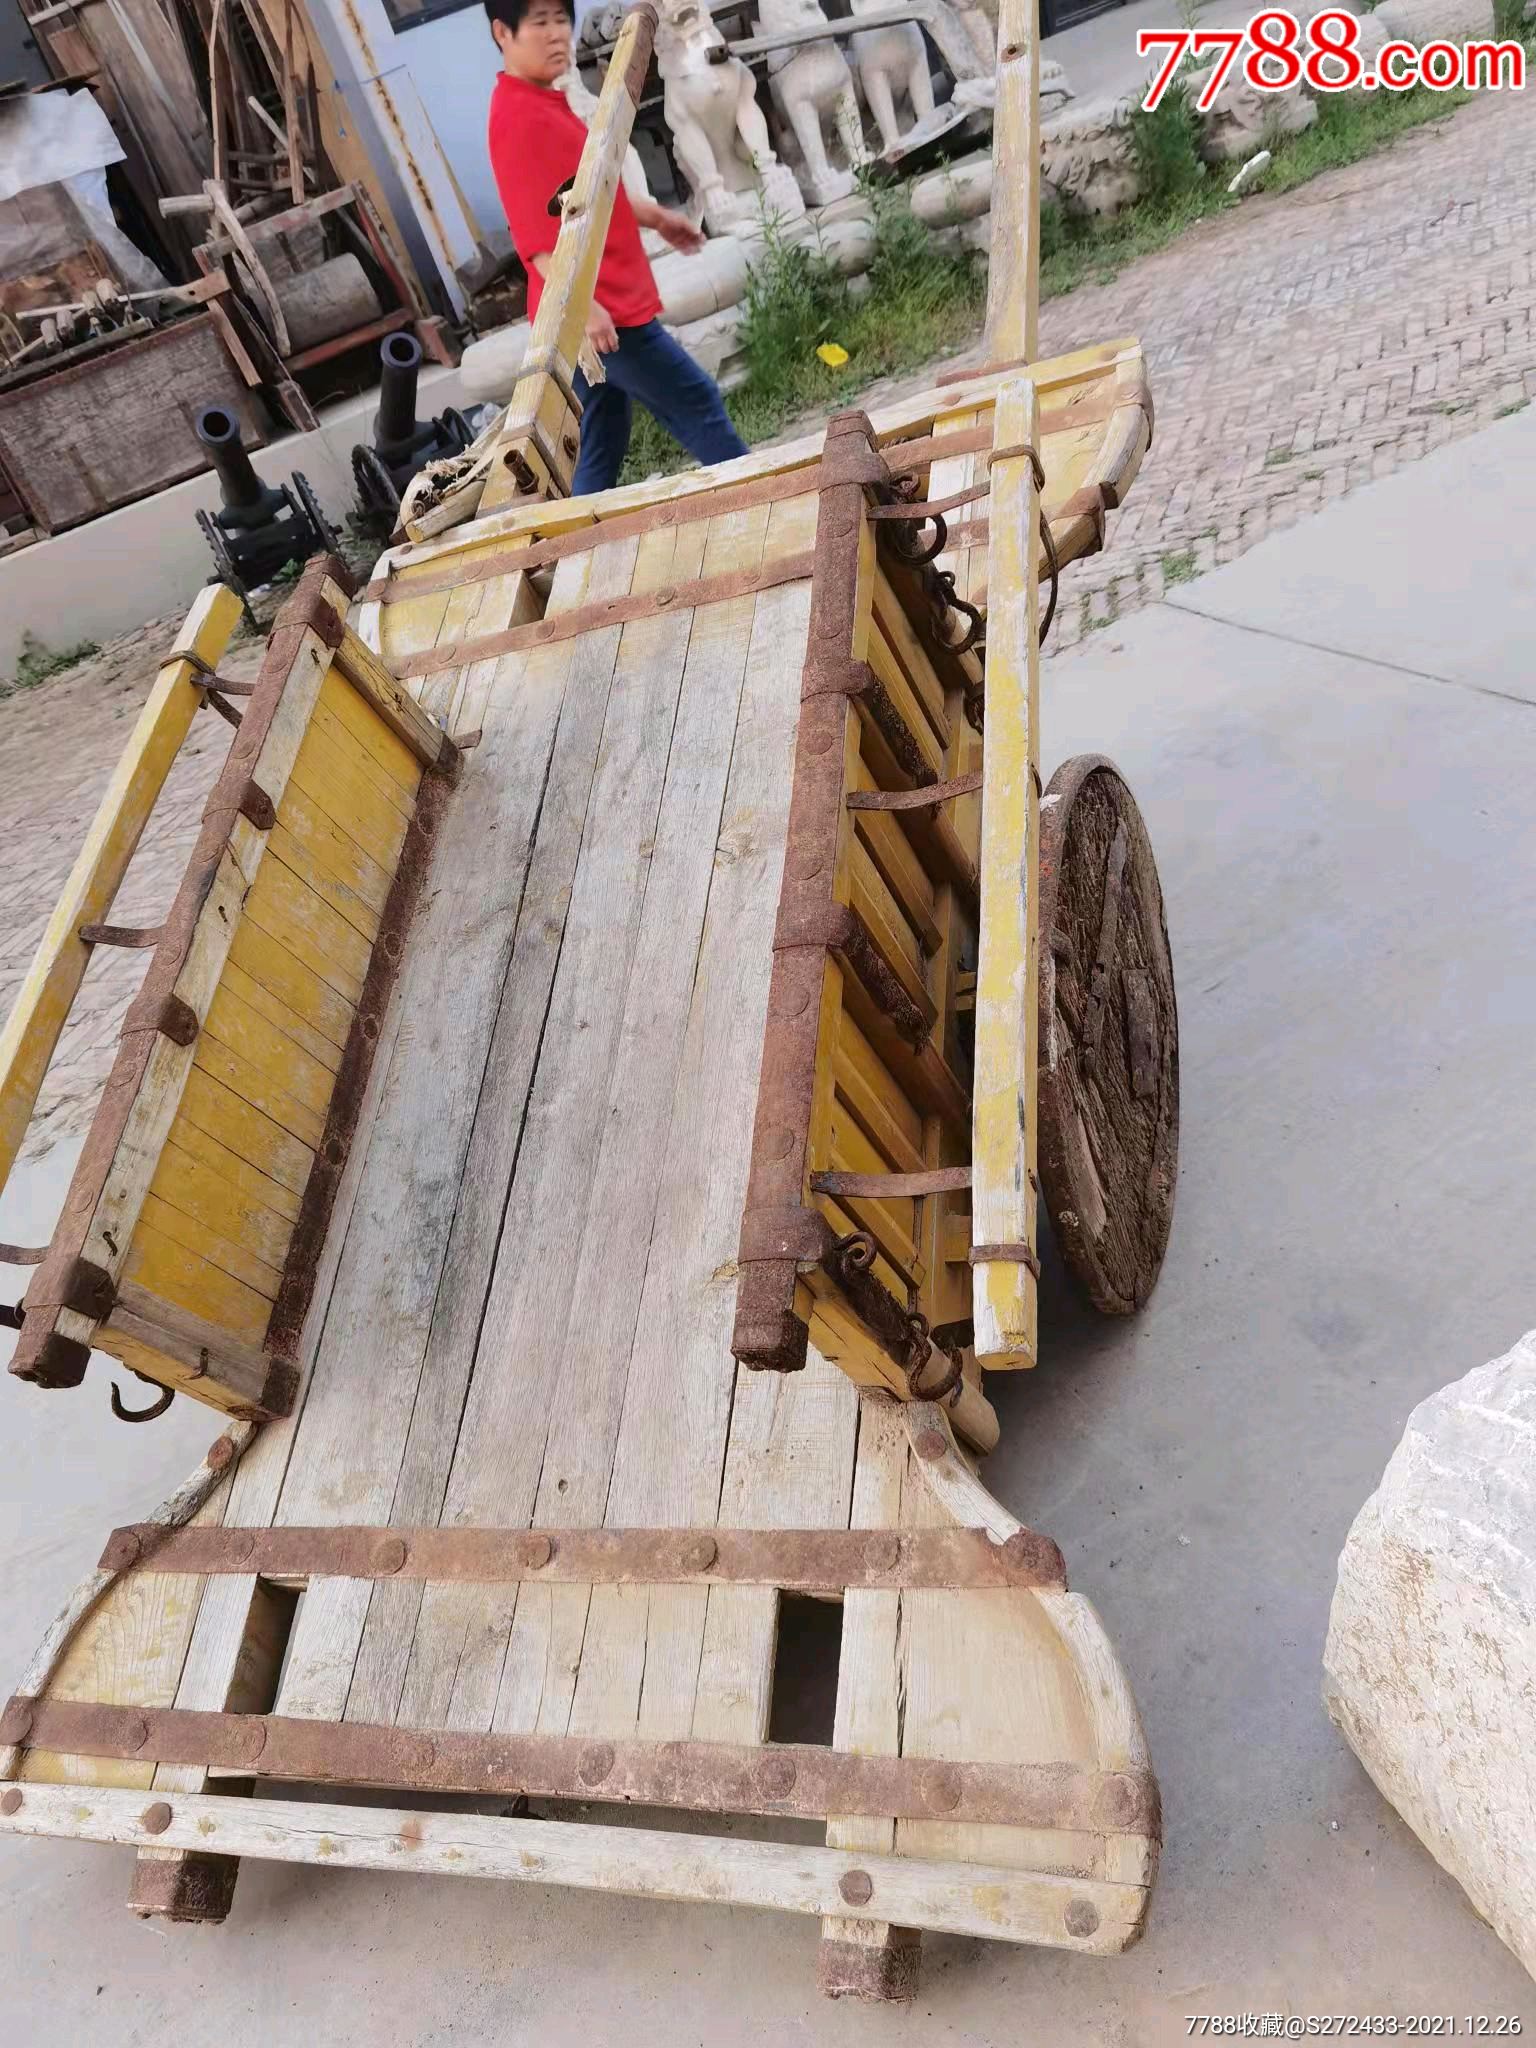 解放前马拉大车一套铁艺完整能用是影视城道具民俗文化馆收藏佳品